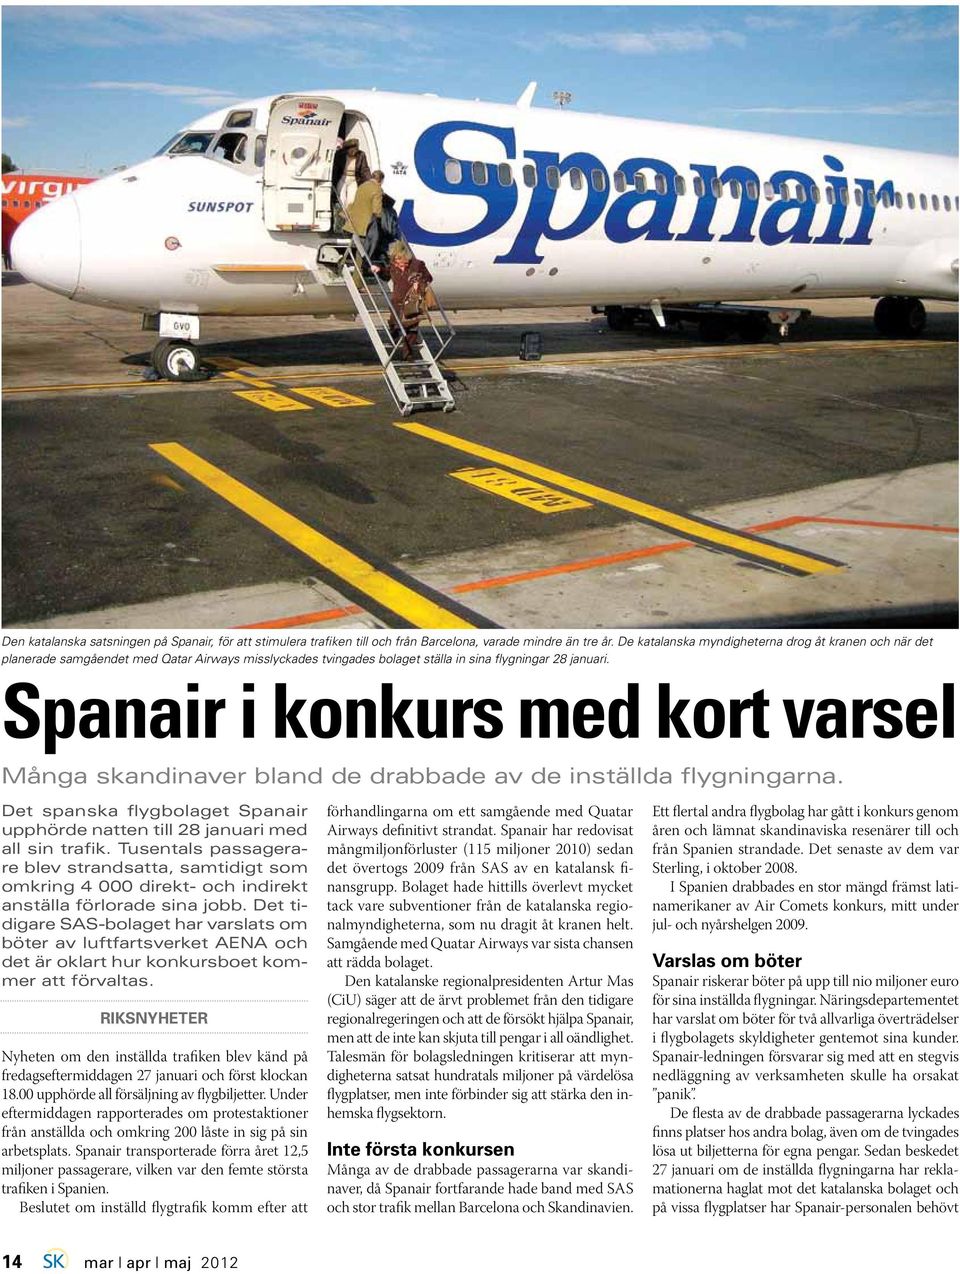 Spanair i konkurs med kort varsel Många skandinaver bland de drabbade av de inställda flygningarna. Det spanska flygbolaget Spanair upphörde natten till 28 januari med all sin trafik.